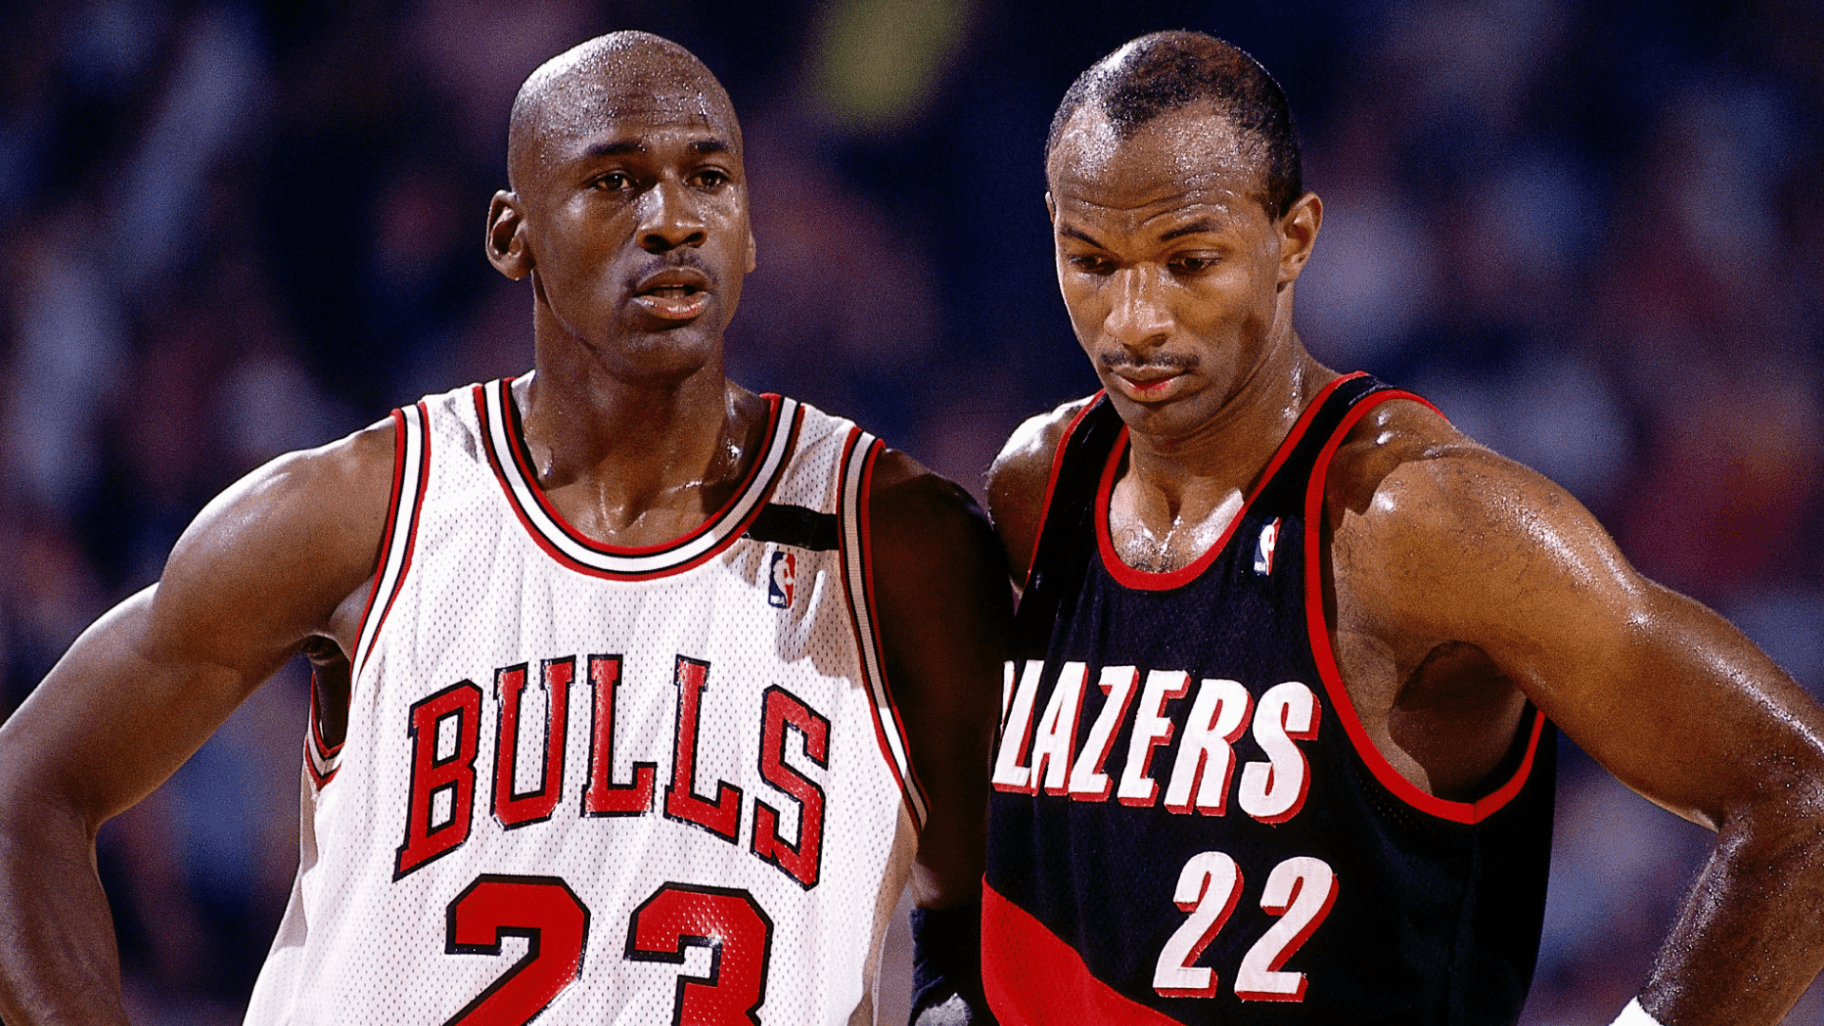 Os maiores rivais da carreira de Michael Jordan